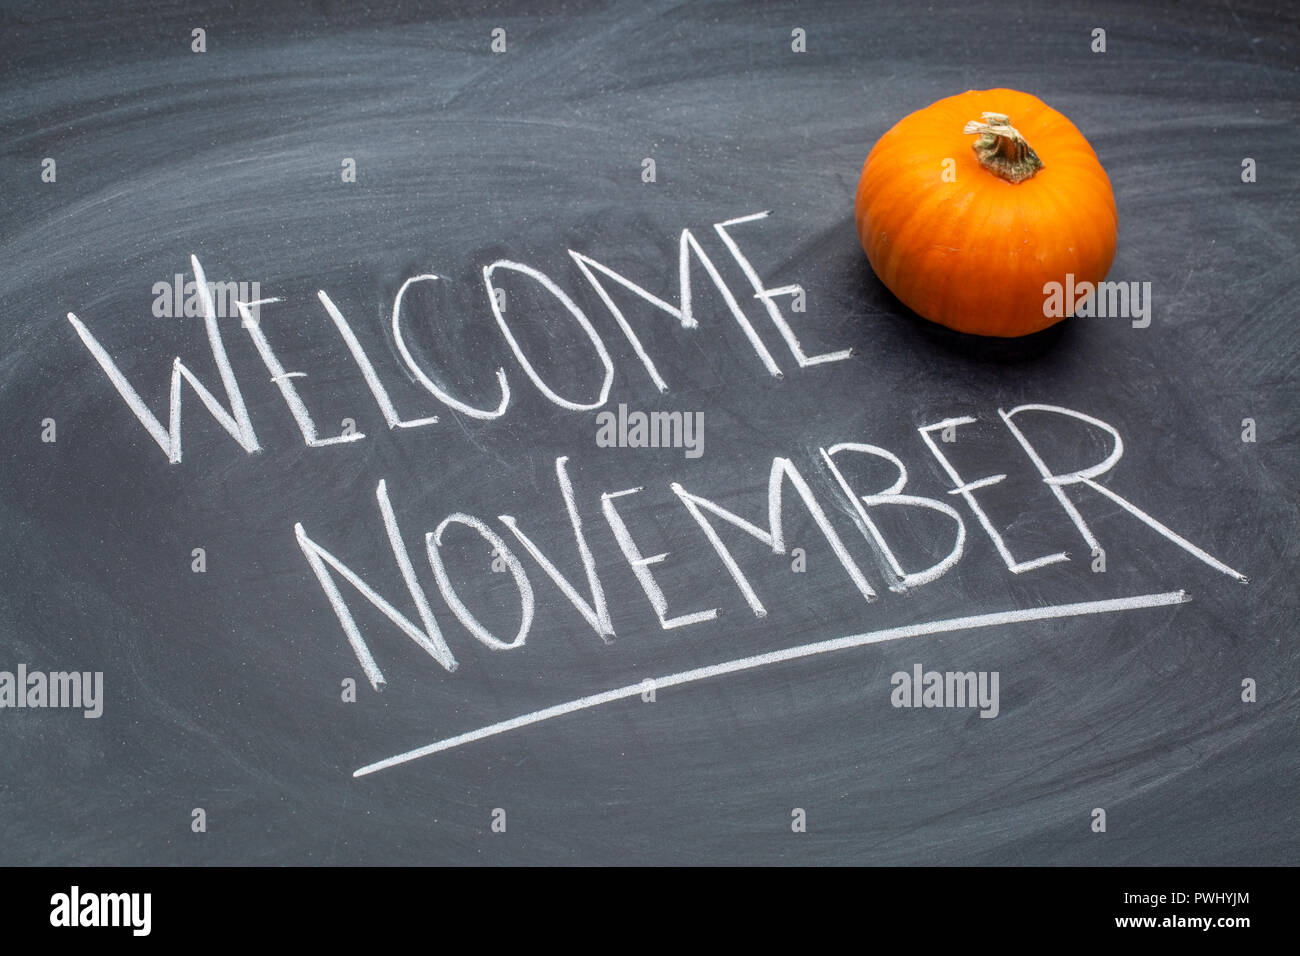 Willkommen November - weißer Kreide Handschrift auf einem Schiefer Tafel mit einem Kürbis Kürbis Stockfoto